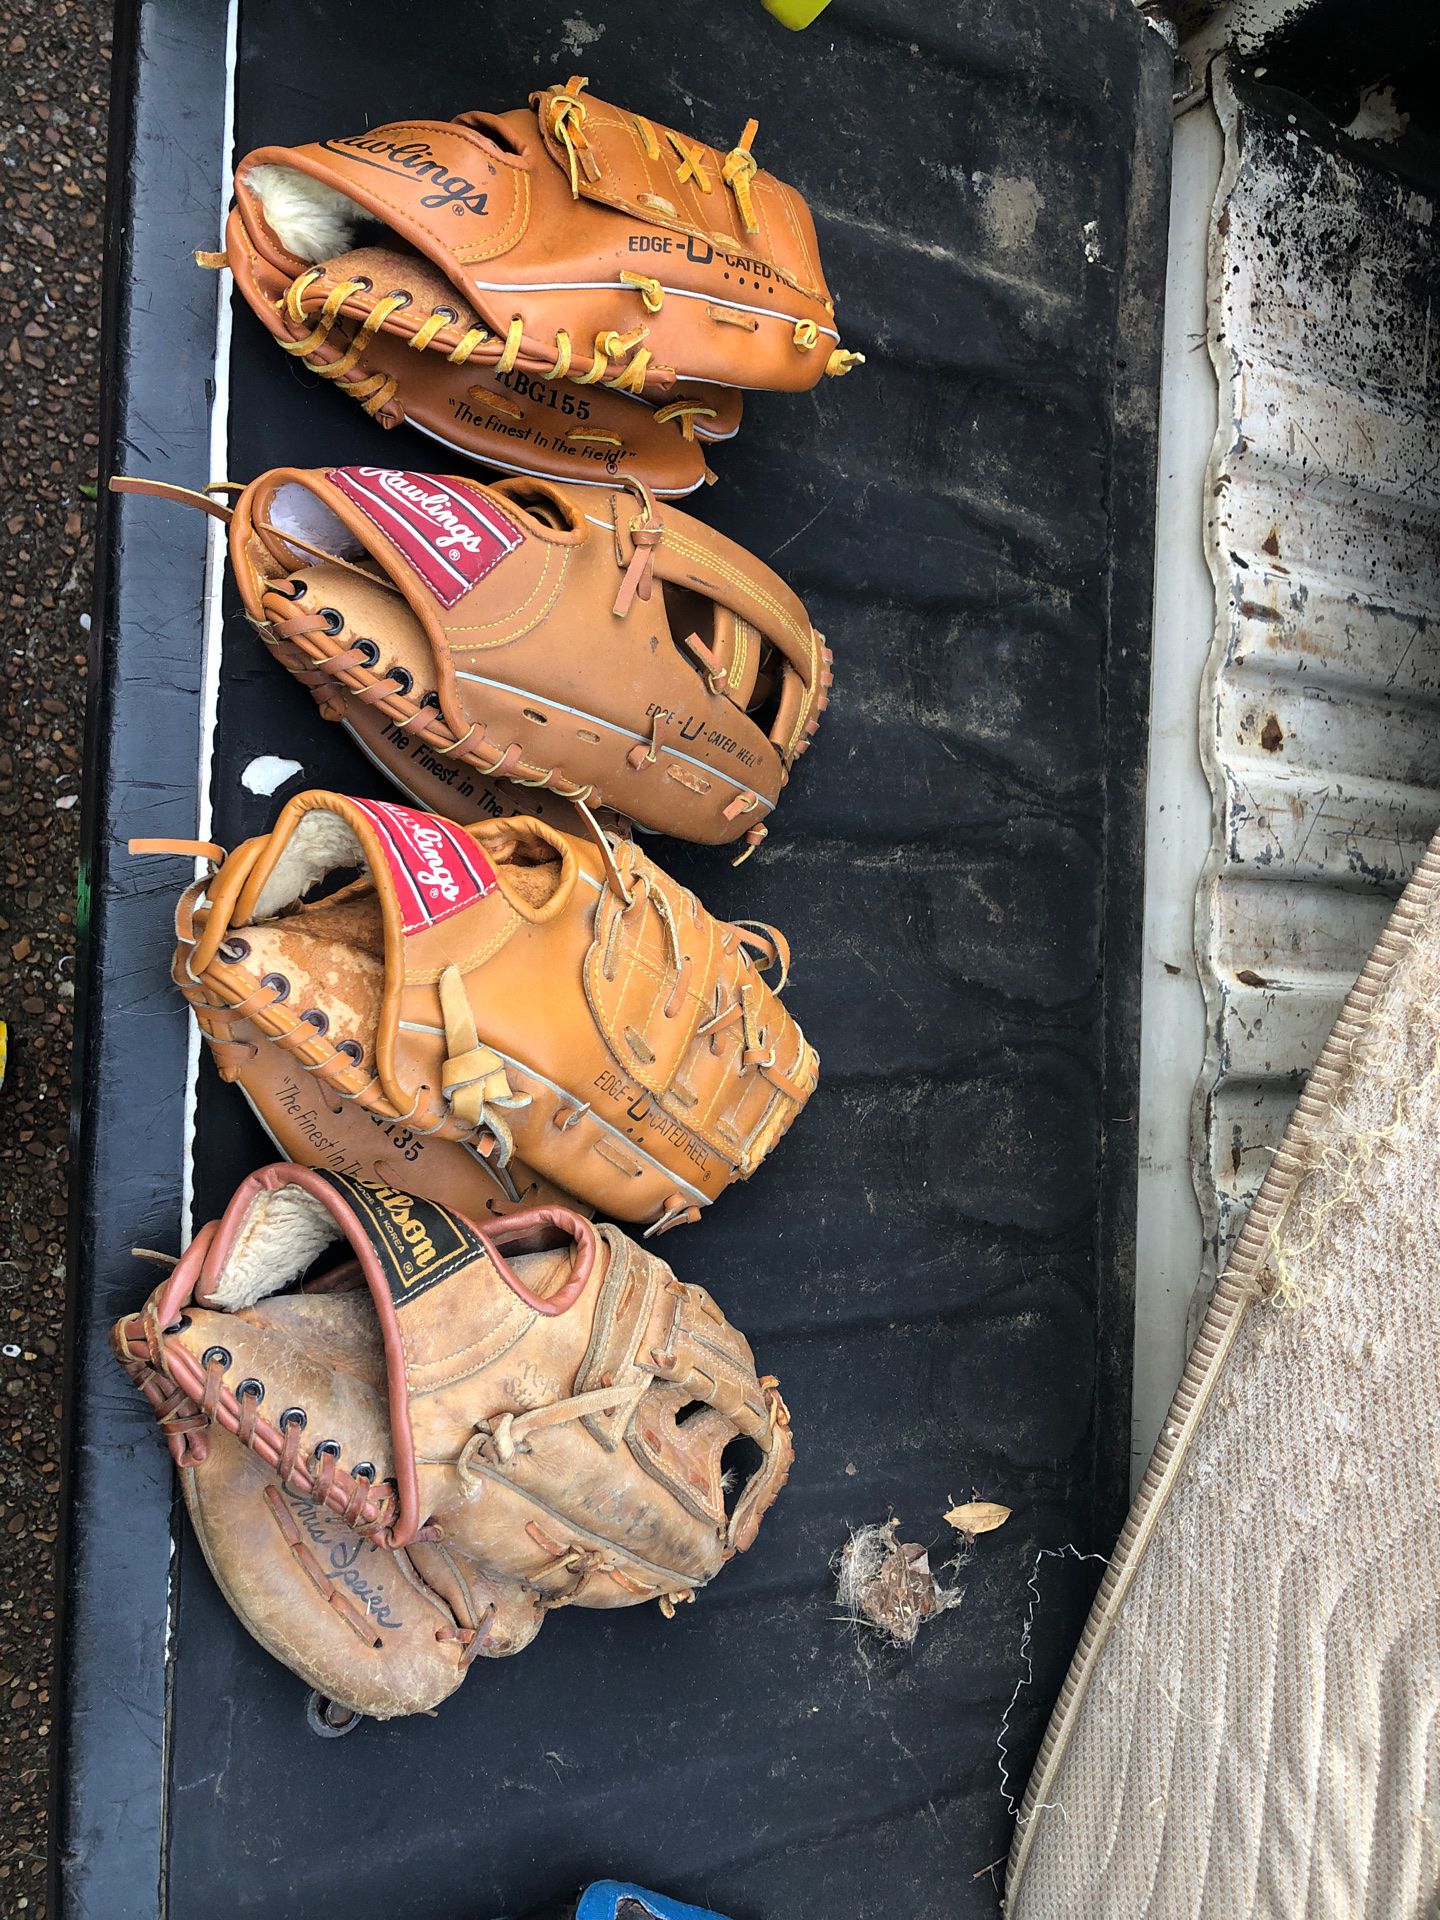 Baseball gloves 10”-11” $20 for all 4 or $5/each